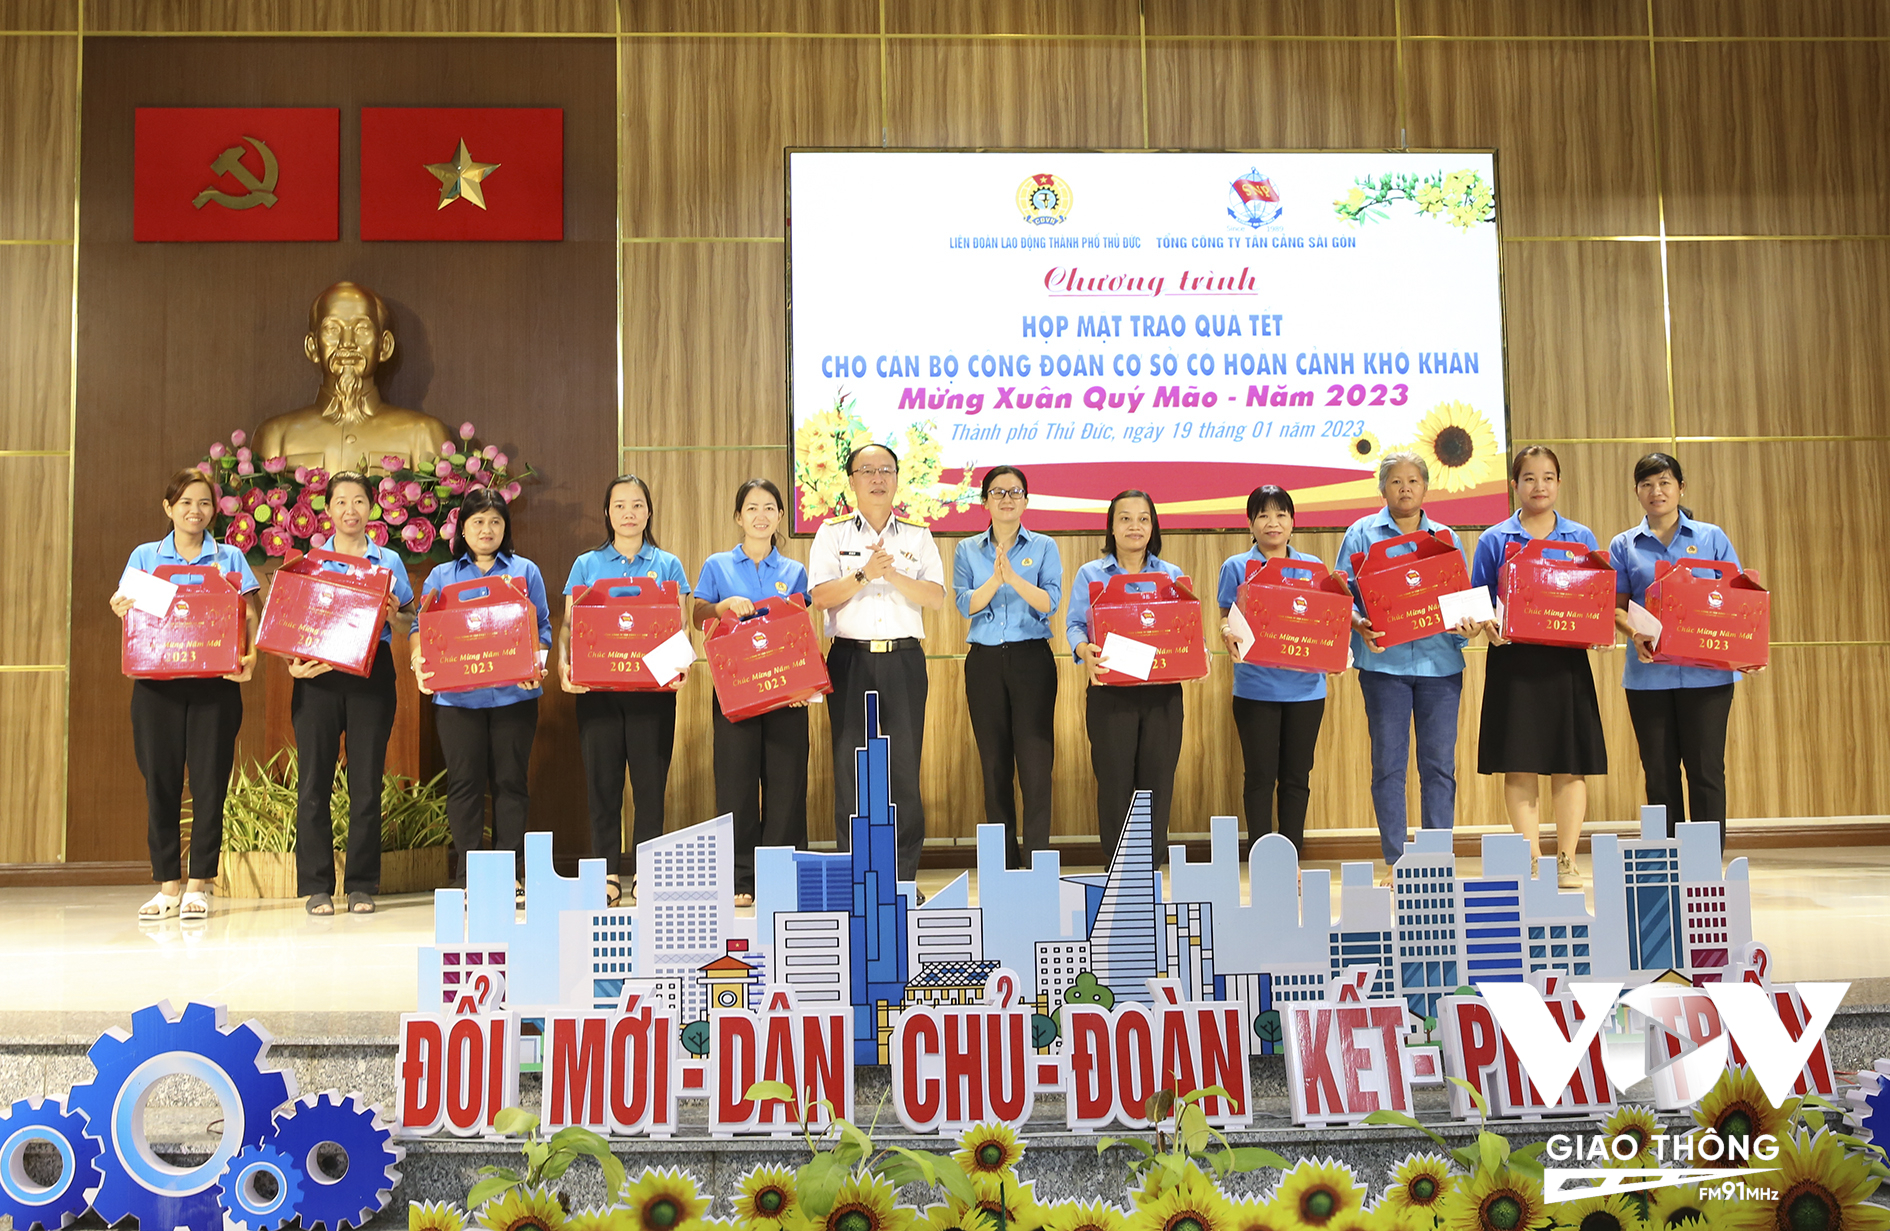 Đại diện TCT Tân Cảng Sài Gòn và Liên đoàn Lao động TP. Thủ Đức trao quà cho các cán bộ công đoàn có hoàn cảnh khó khăn